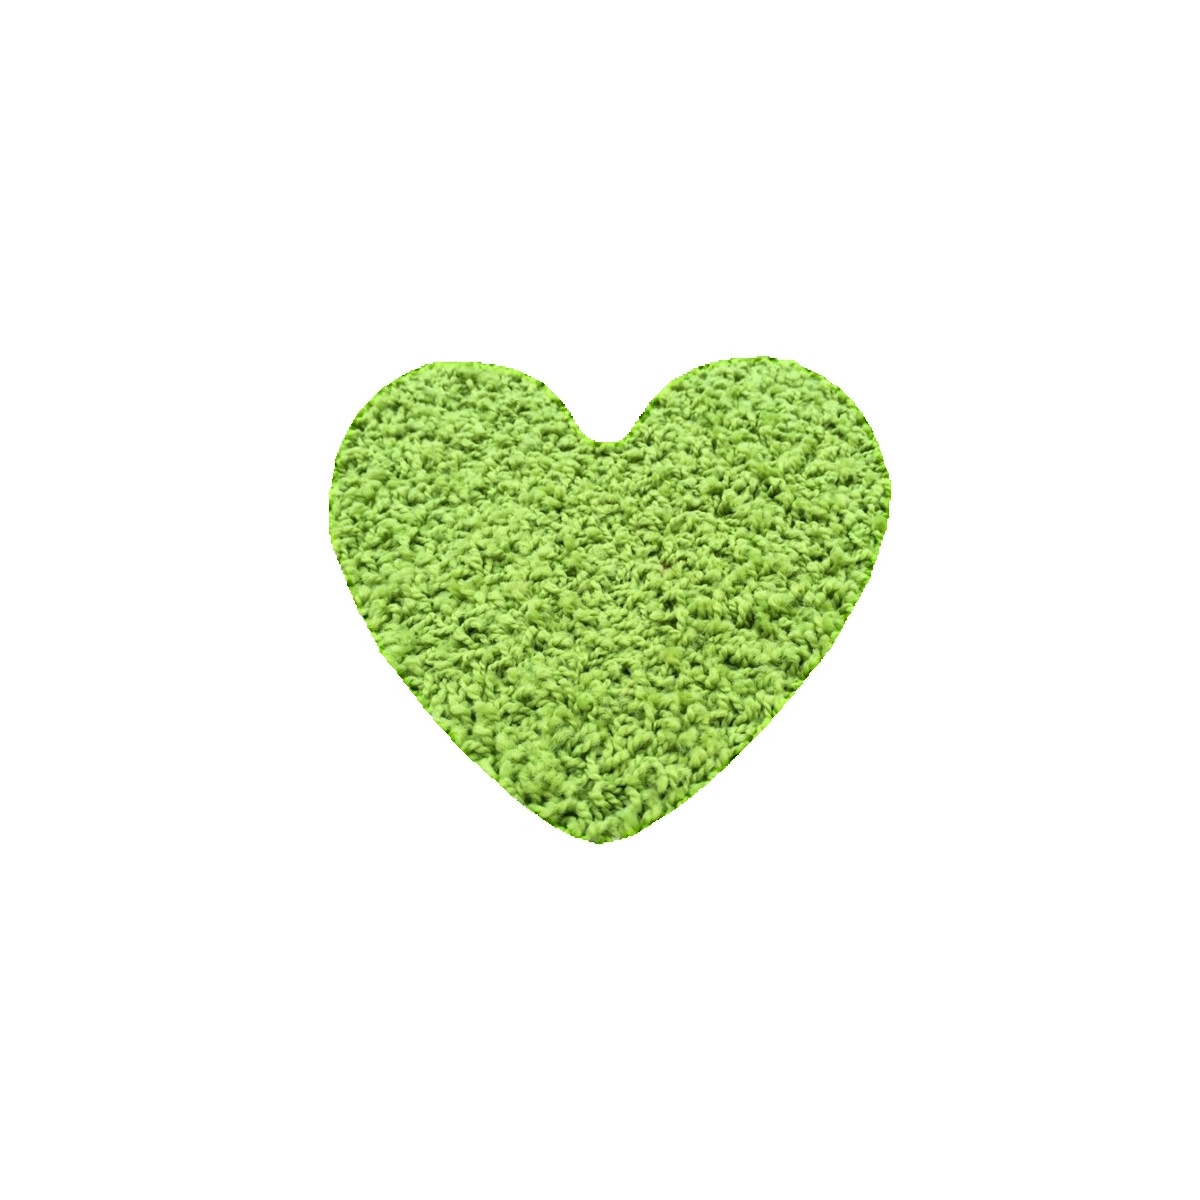 Kusový koberec Color shaggy zelený srdce